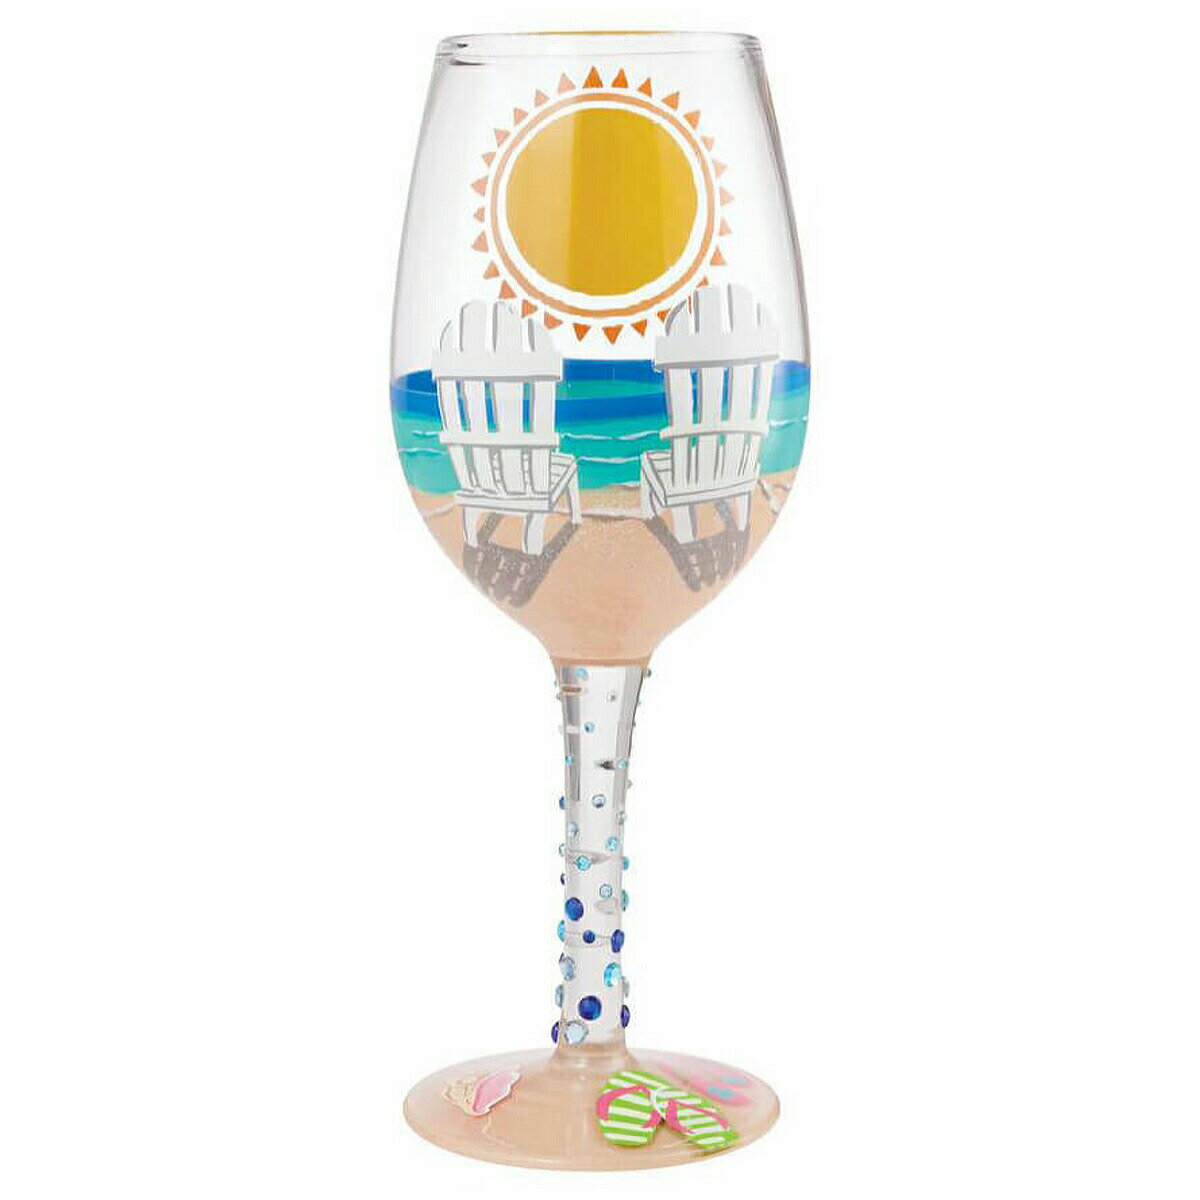 ロリータ LOLITA グラス ワイングラス 6009213 SUN ON THE BEACH 浜辺の太陽 海 マルチカラー おしゃれ ブランド 新品